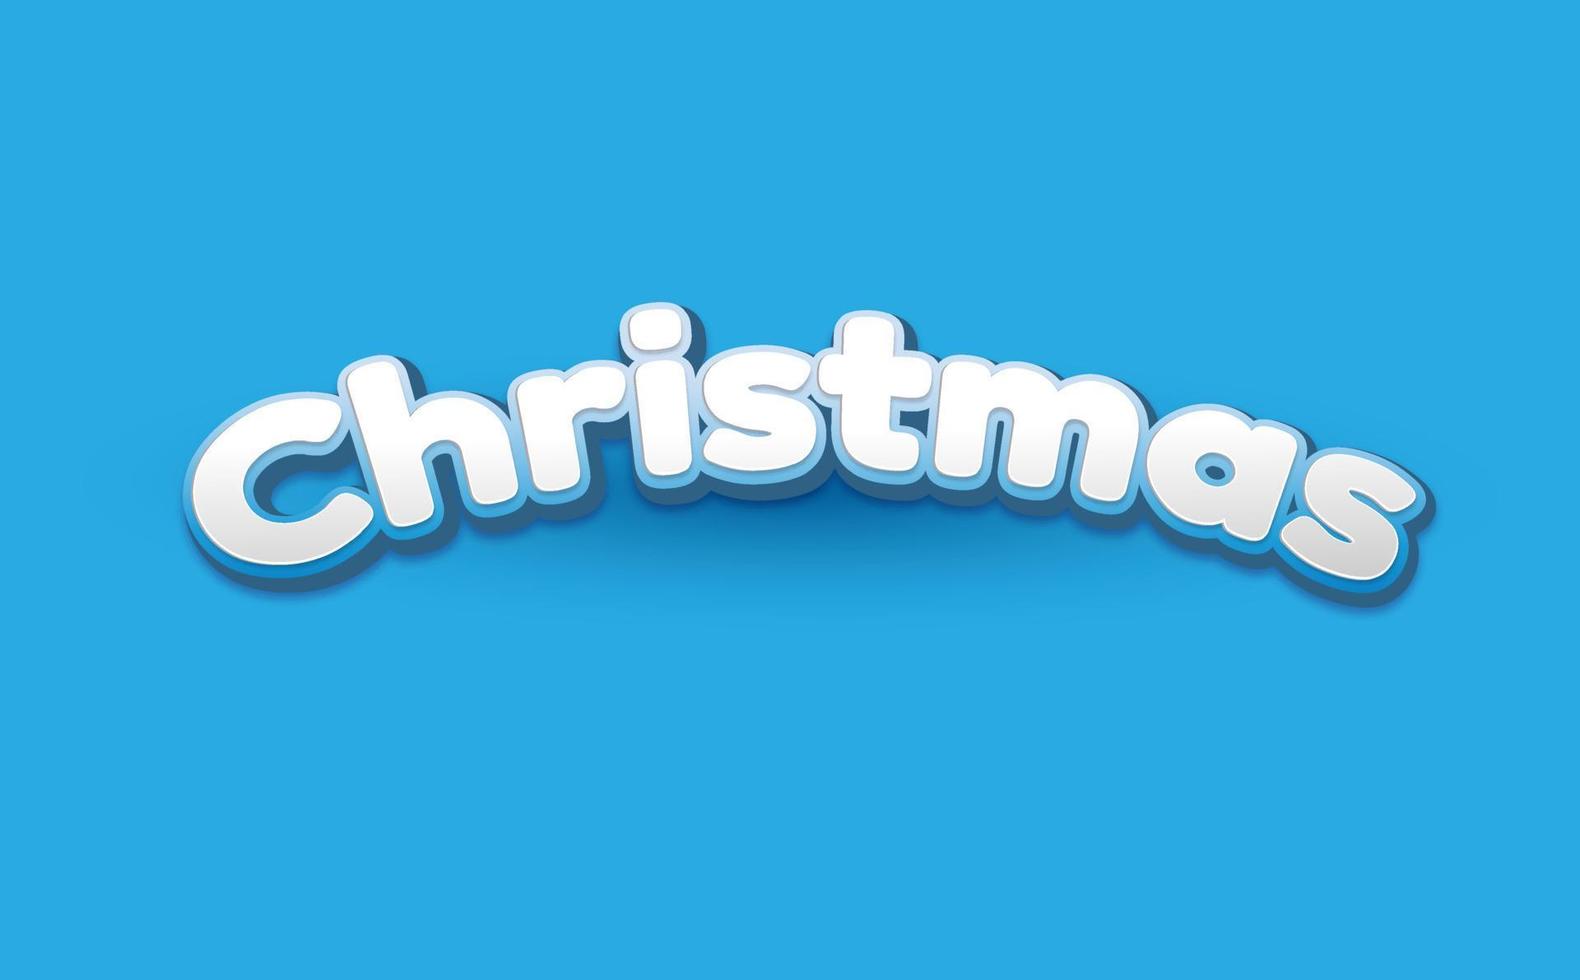 Christmas text on a plain light blue background vector